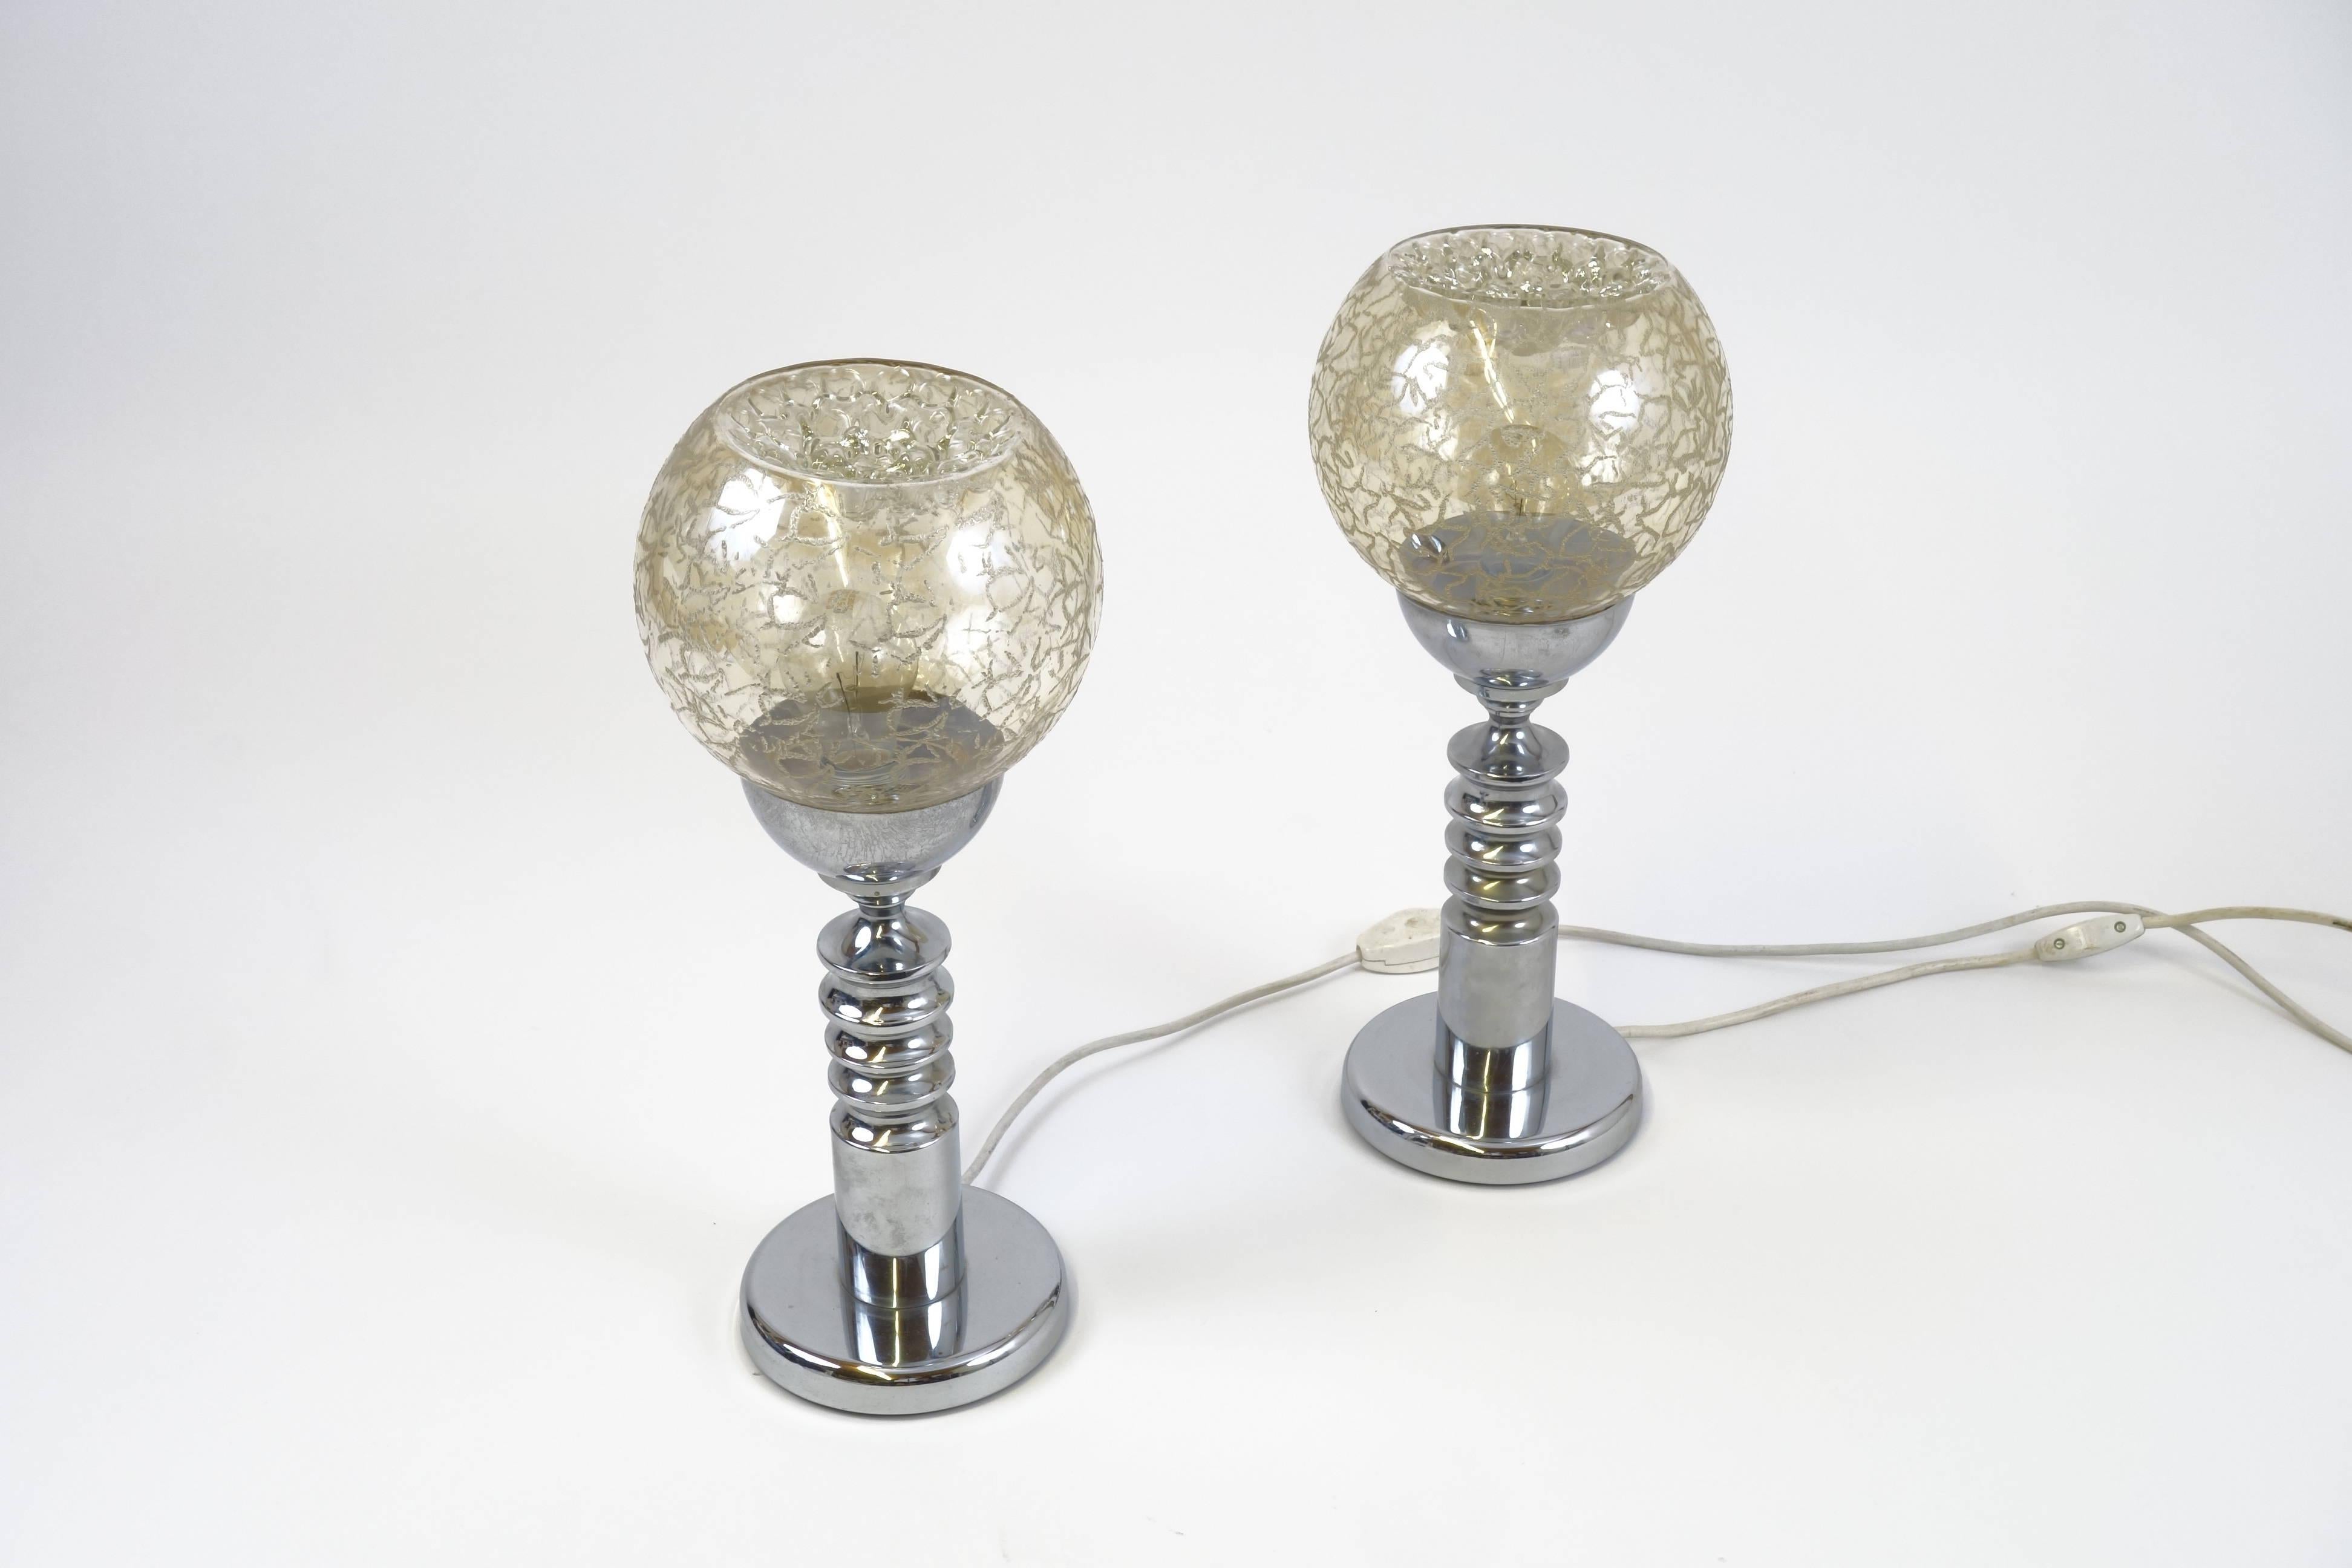 Une paire de lampes de table avec des arbres en métal chromé et des hémisphères en verre structuré, très probablement fabriquées par Barovier & Toso au cours des années 1970. Hémisphères en verre de Murano gravé, apparaissant dans une chaude teinte